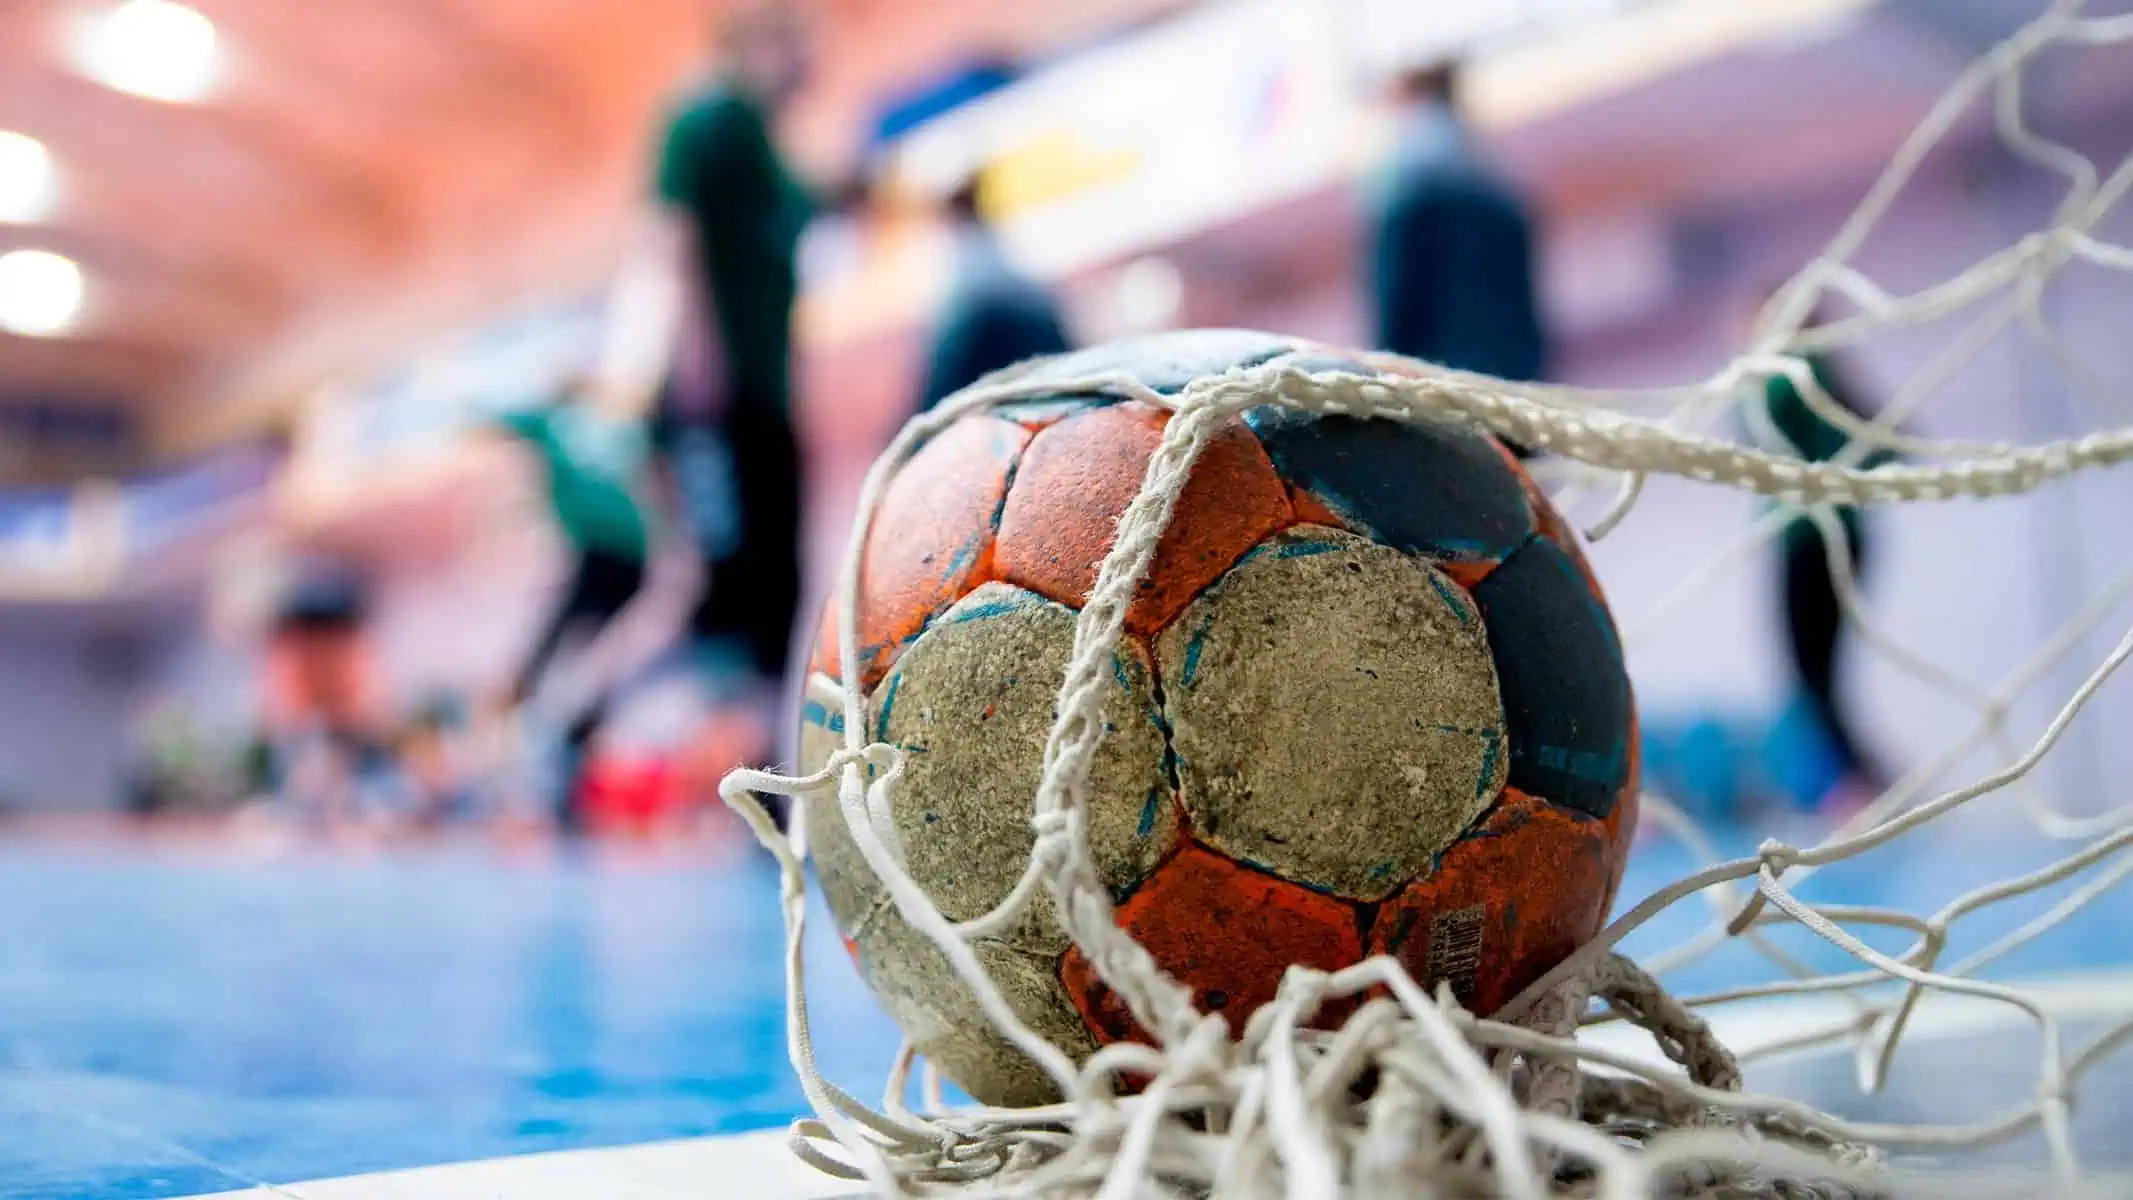 Cuba Obtuvo Boleto para Campeonato Mundial Masculino de Balonmano Luego de 15 Años sin Participar 